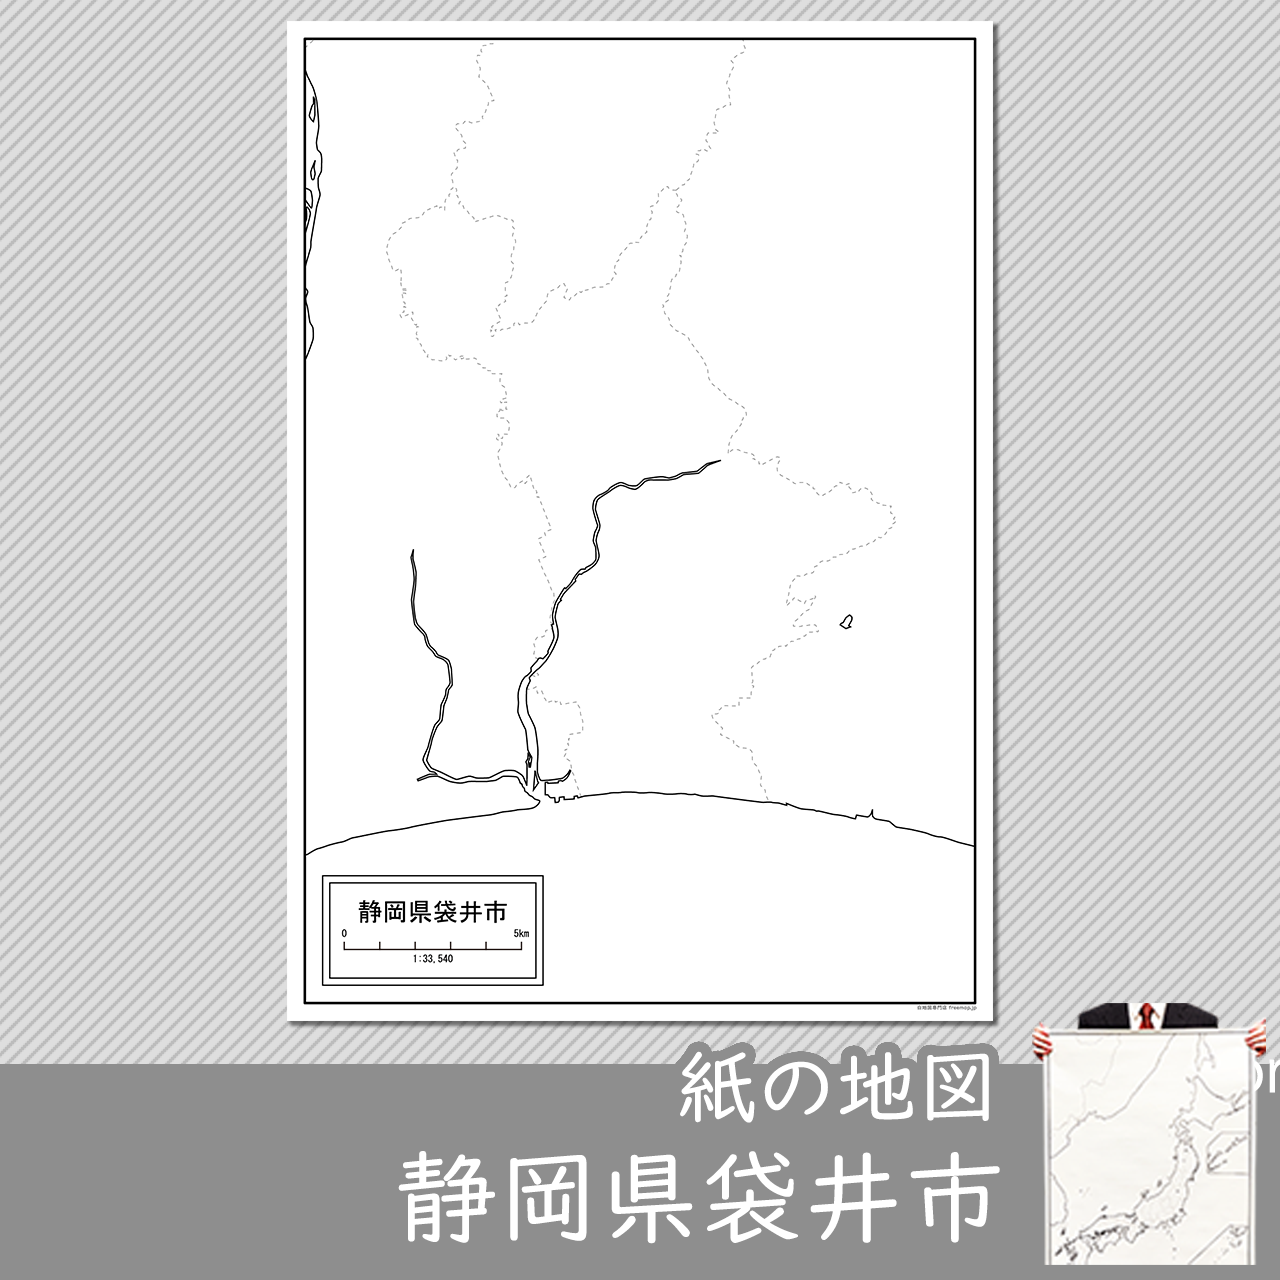 袋井市の紙の白地図のサムネイル